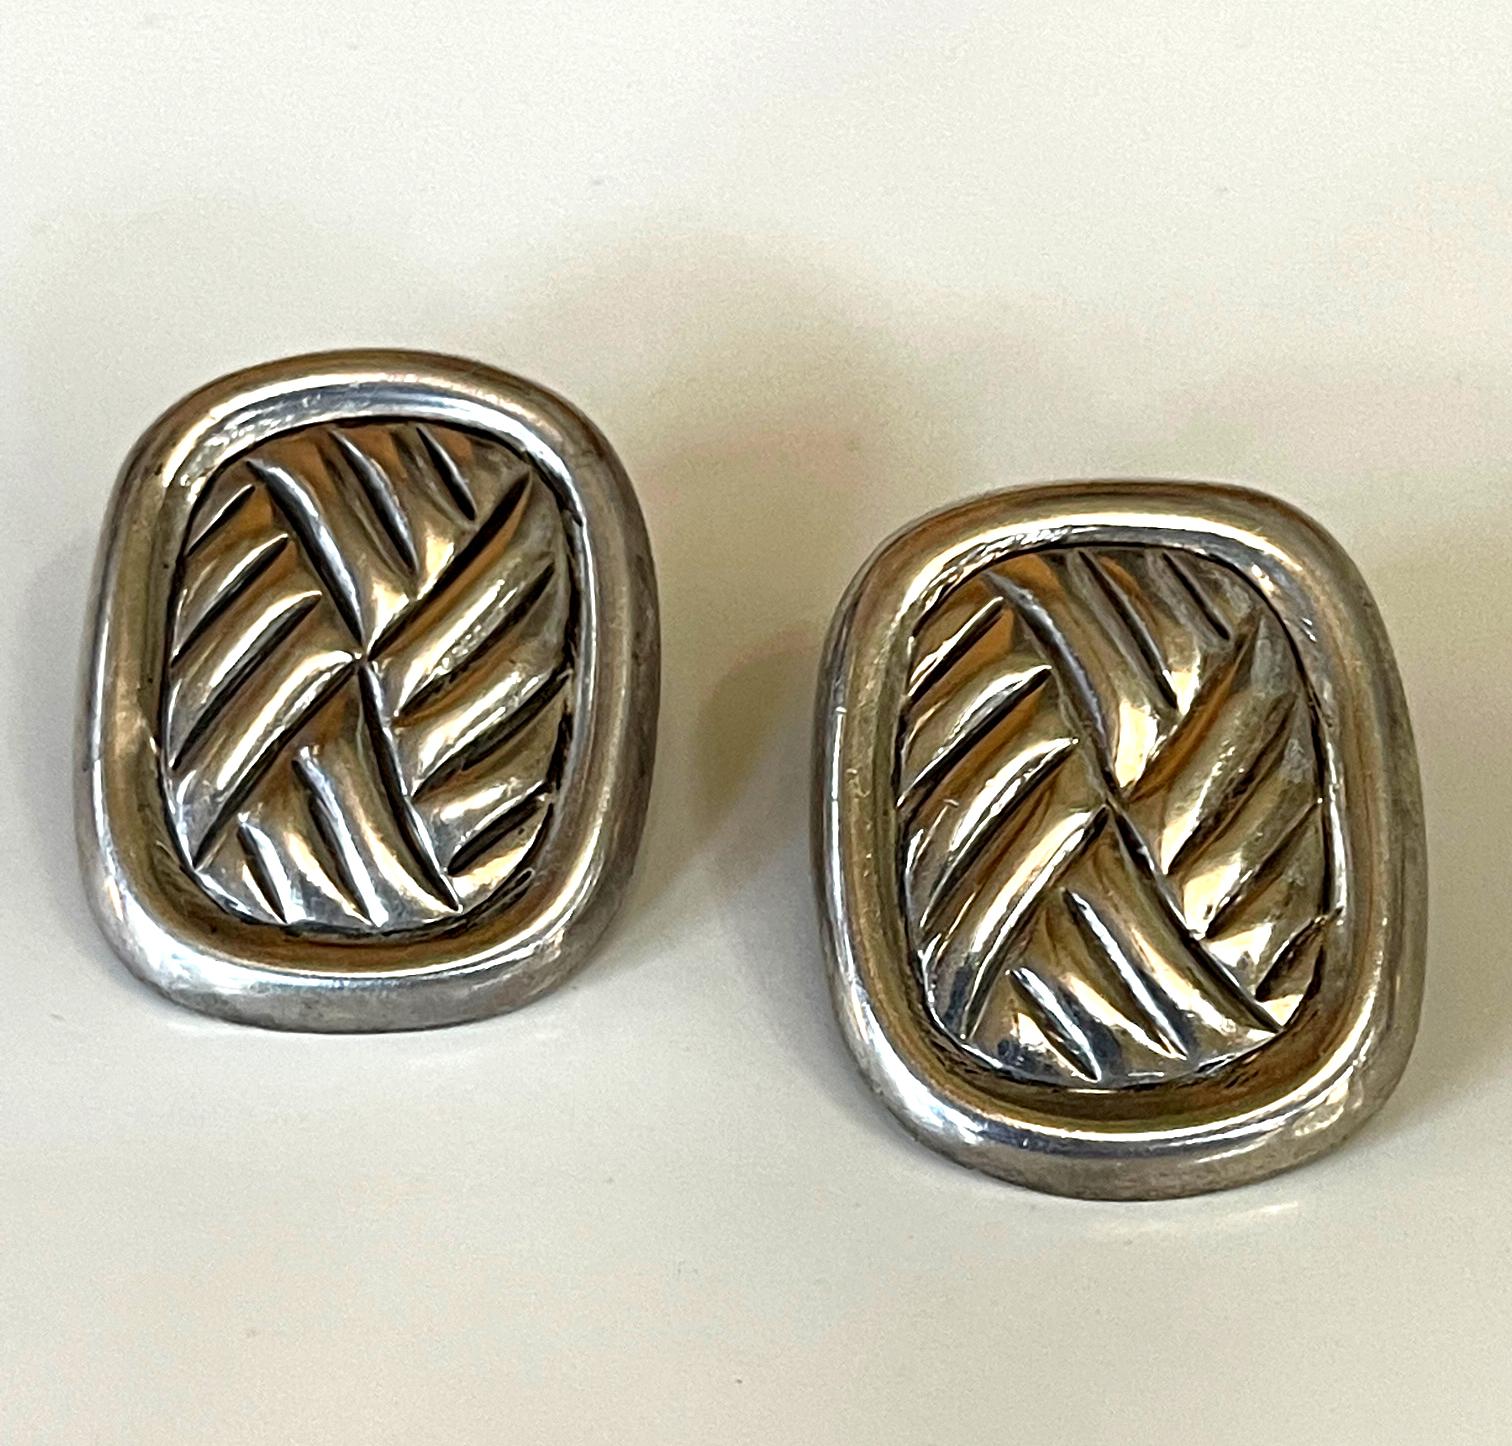 Une paire de boucles d'oreilles modernistes en argent sterling par William Spratling de la troisième période 1964-1967. Fabriqué dans son studio à Taxco, au Mexique. La boucle d'oreille présente un motif abstrait tissé dans une bordure, inspiré de